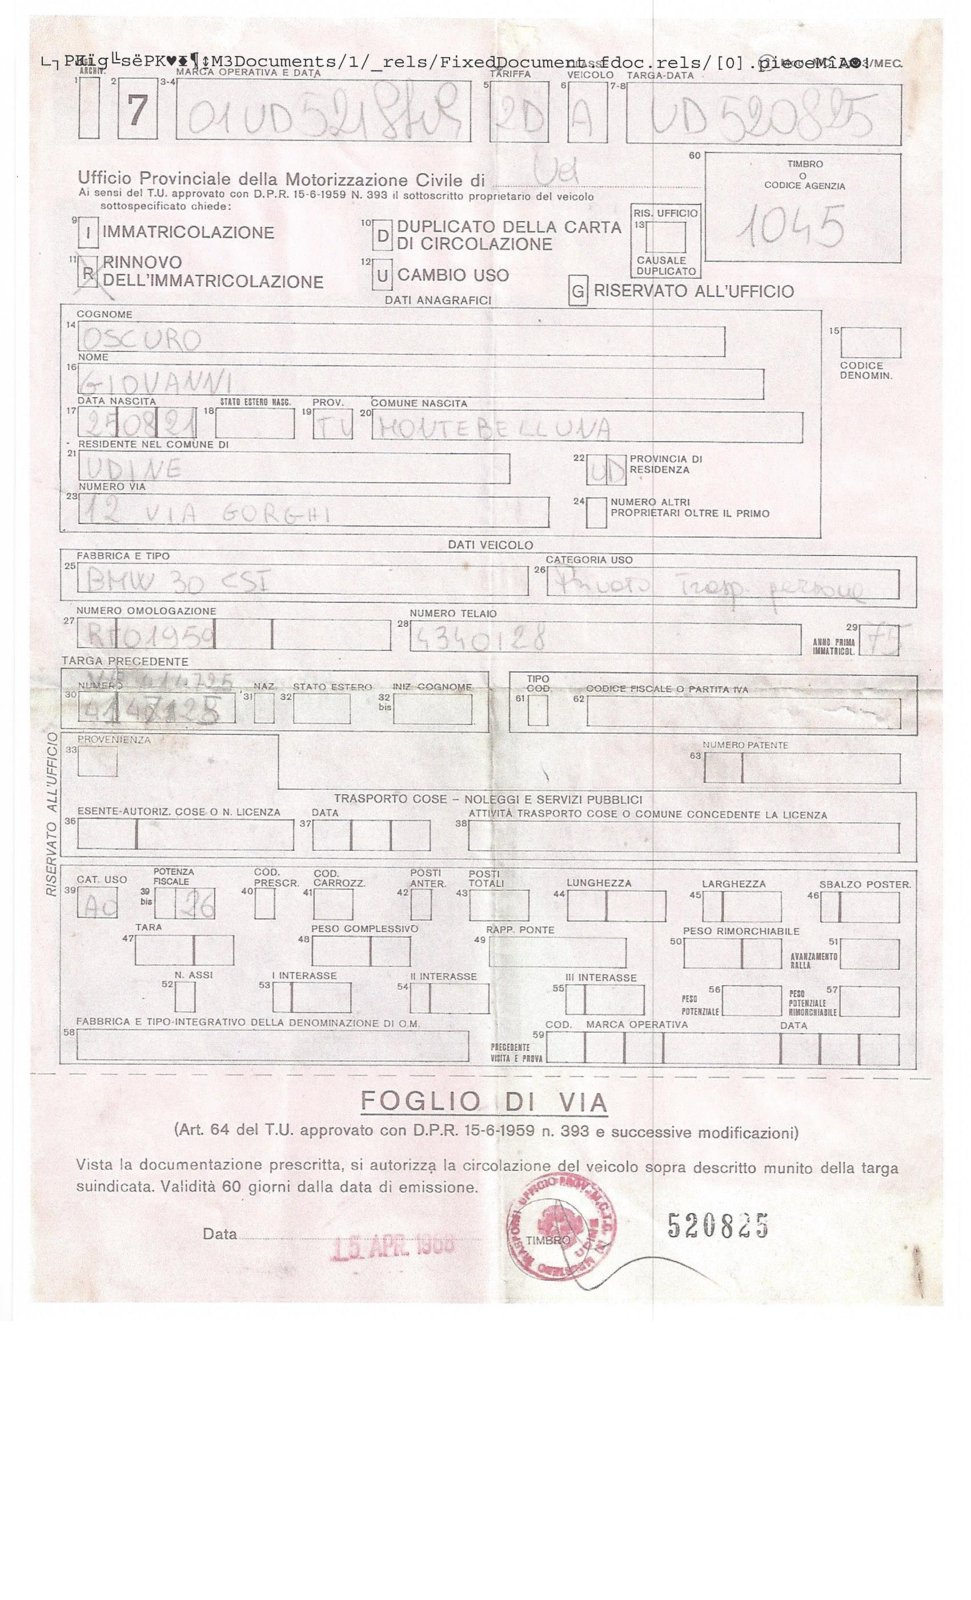 1986 Registration Renewal 15.04.86 UG - Copy.jpg